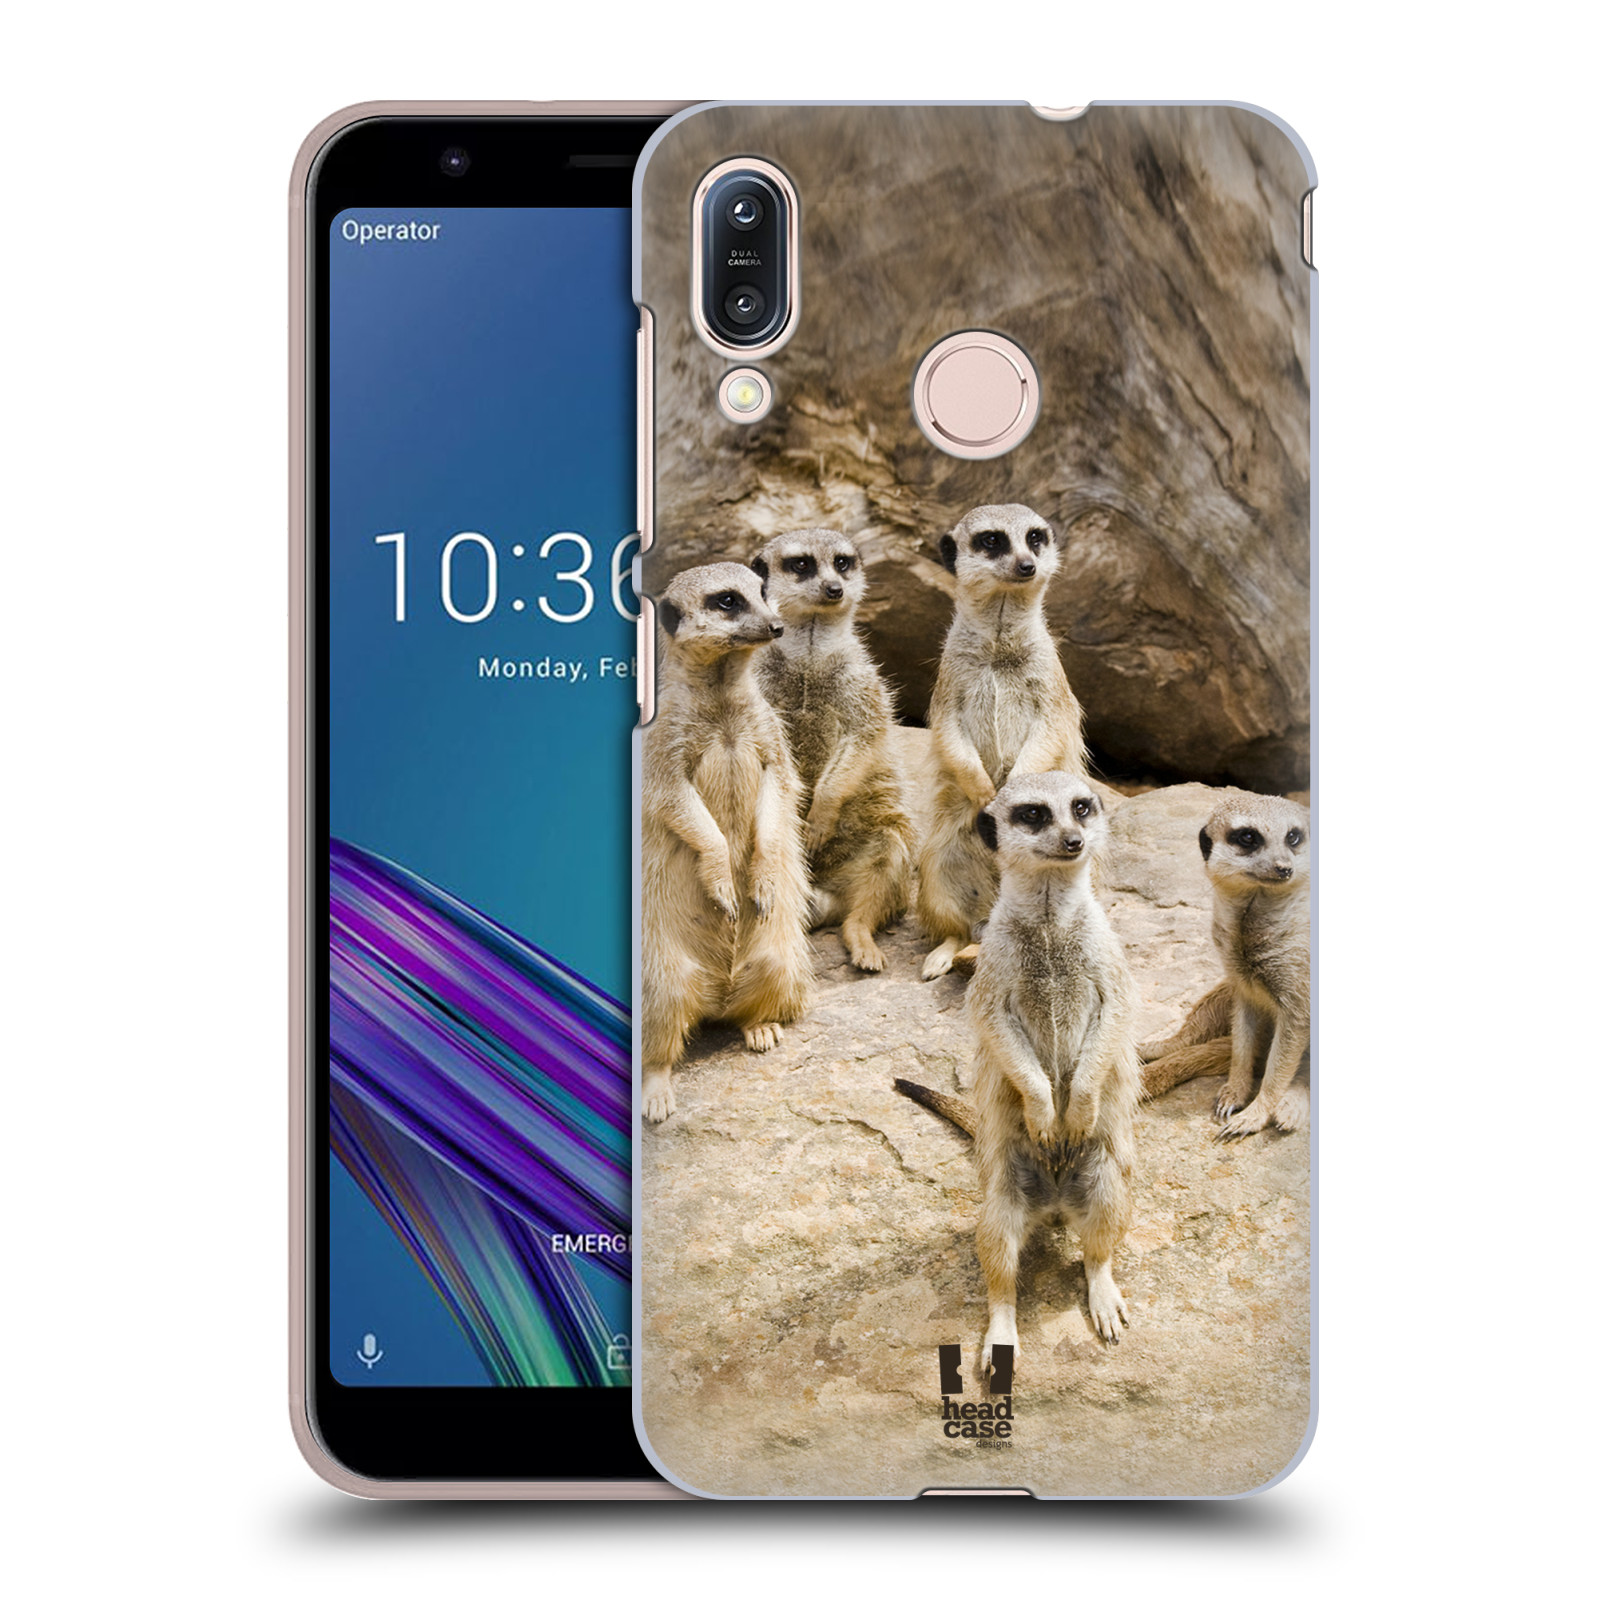 Zadní obal pro mobil Asus Zenfone Max (M1) ZB555KL - HEAD CASE - Svět zvířat roztomilé surikaty